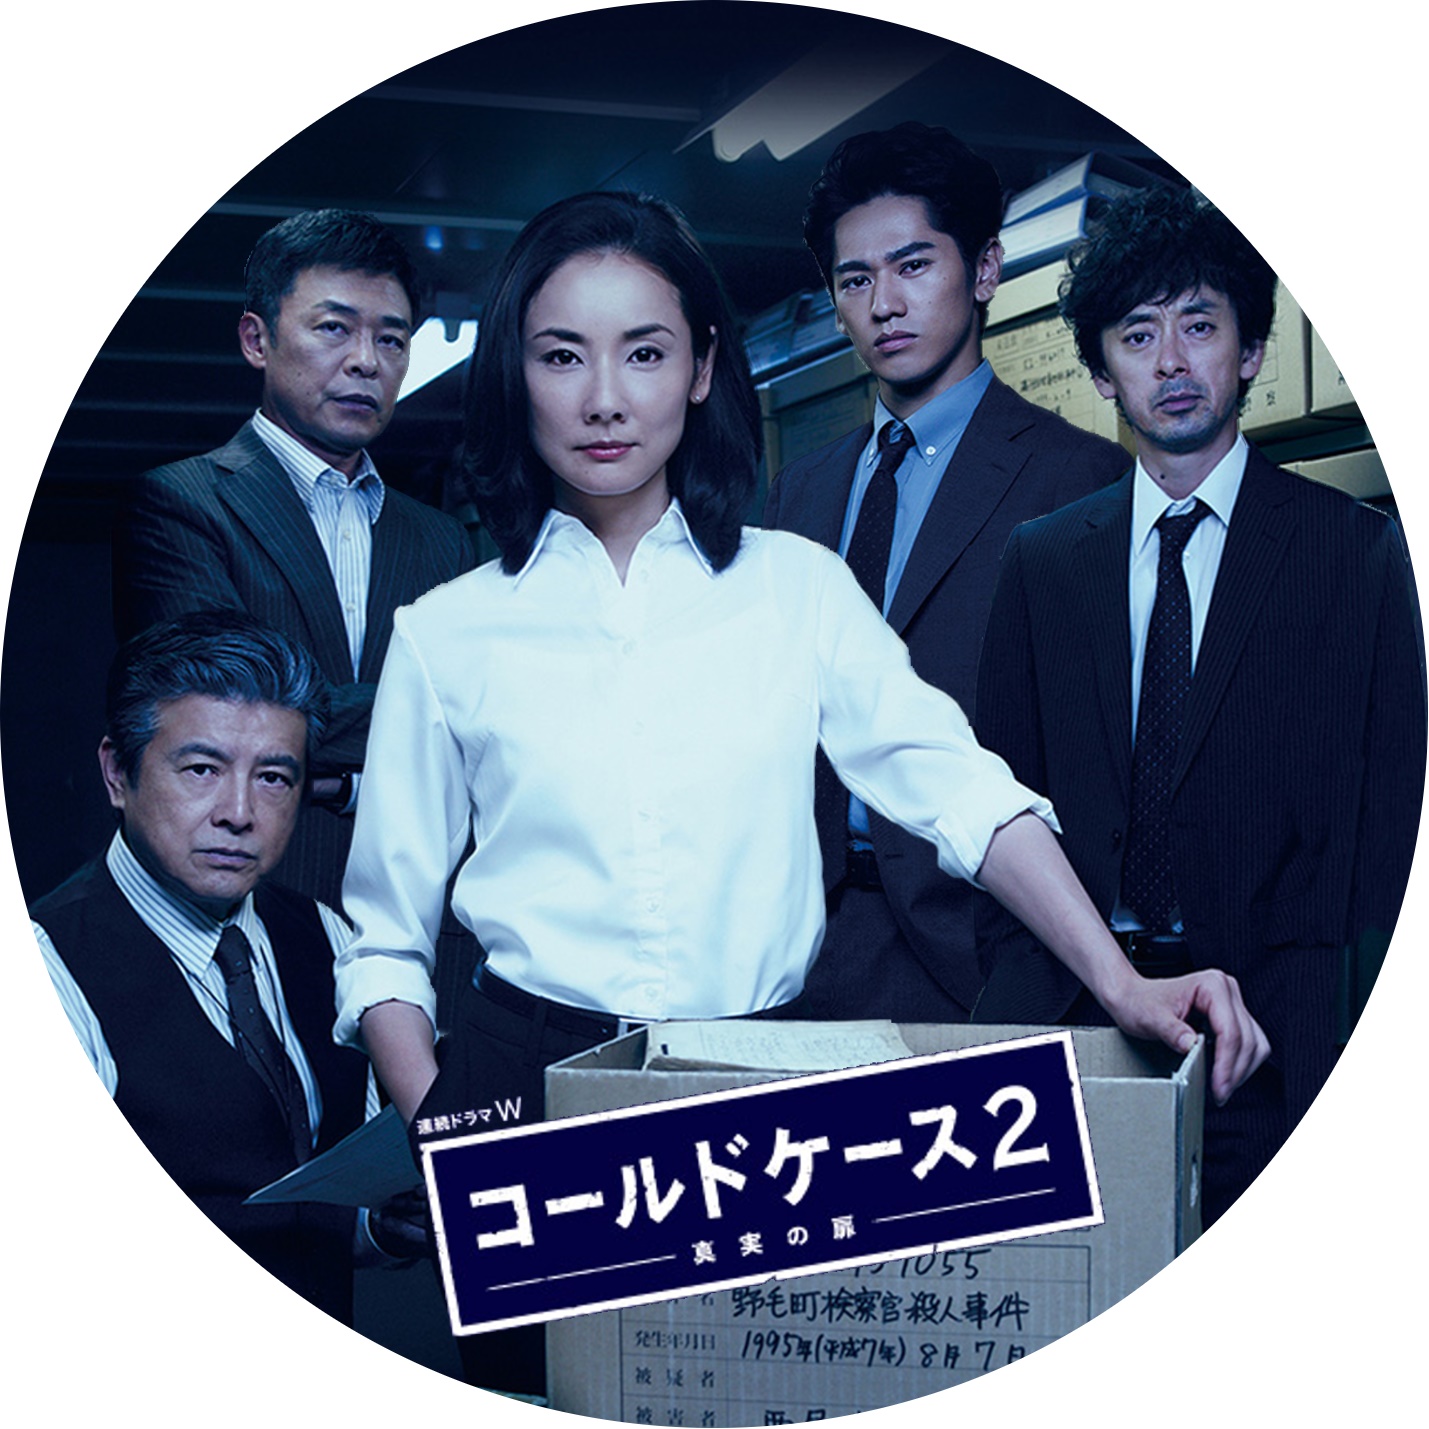 期間限定特価】 連続ドラマW コールドケース-真実の扉 DVD season1.2